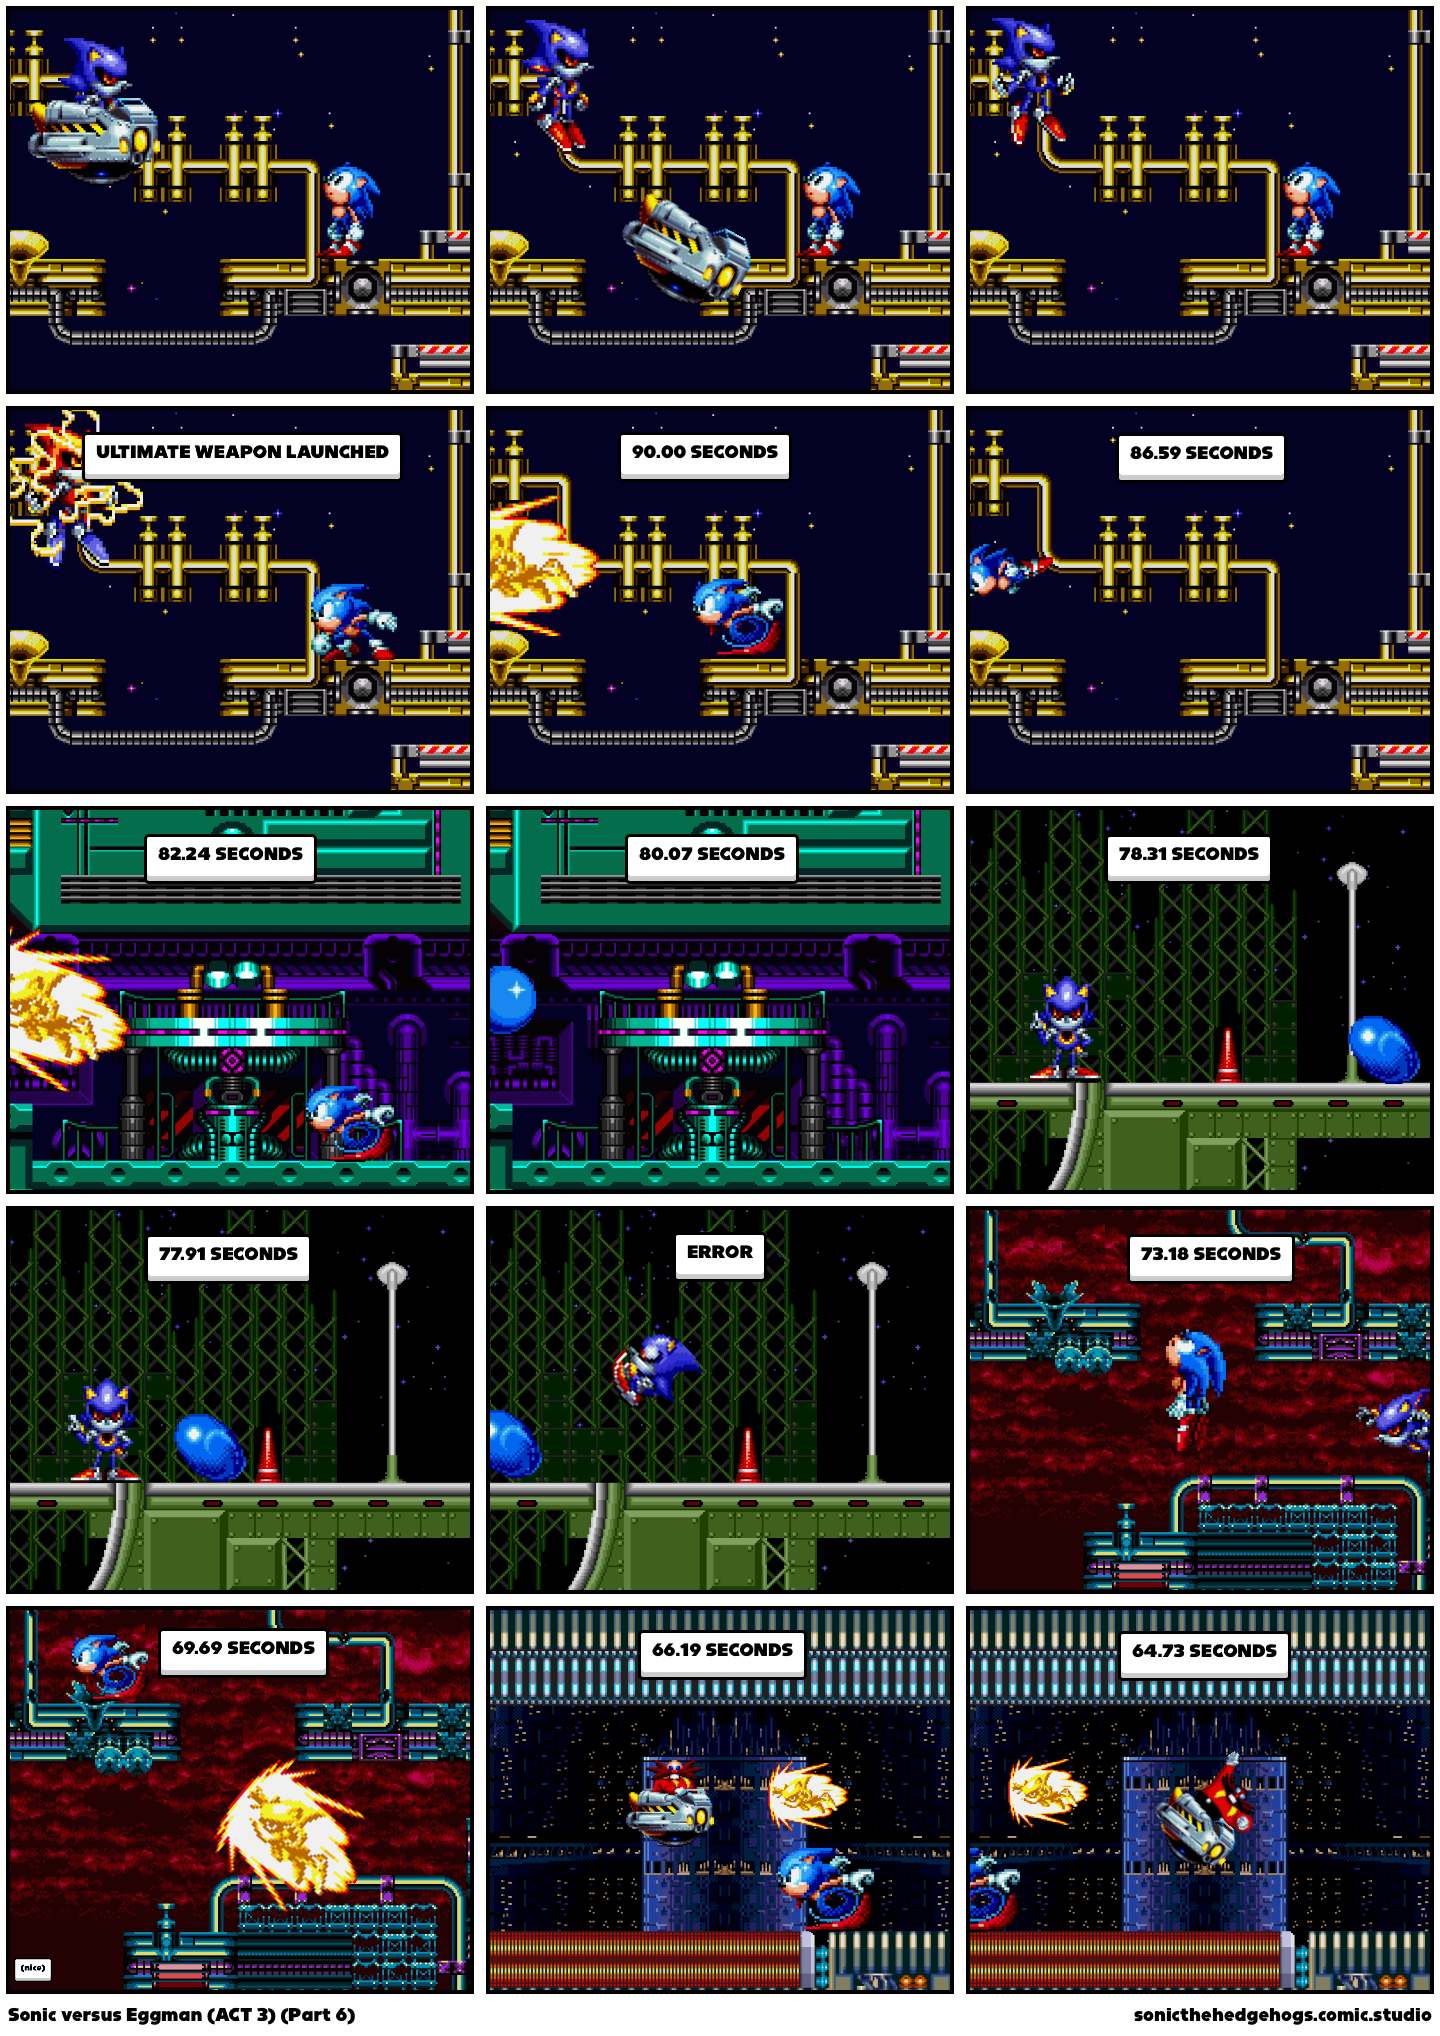 Sonic versus Eggman (ACT 3) (Part 6)